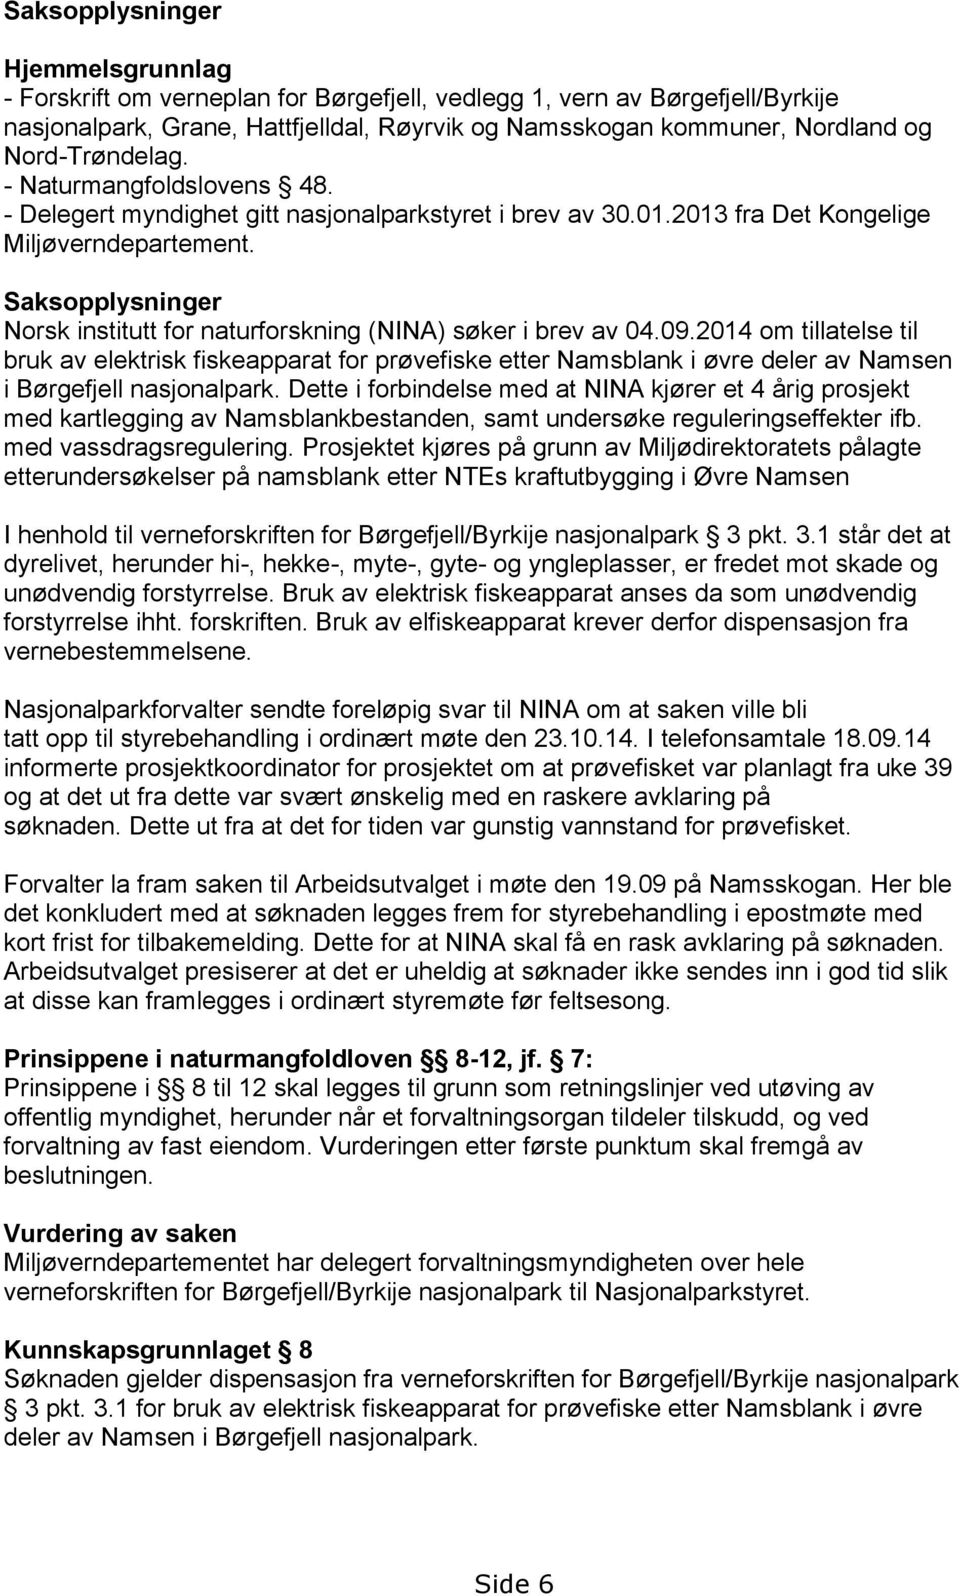 Saksopplysninger Norsk institutt for naturforskning (NINA) søker i brev av 04.09.